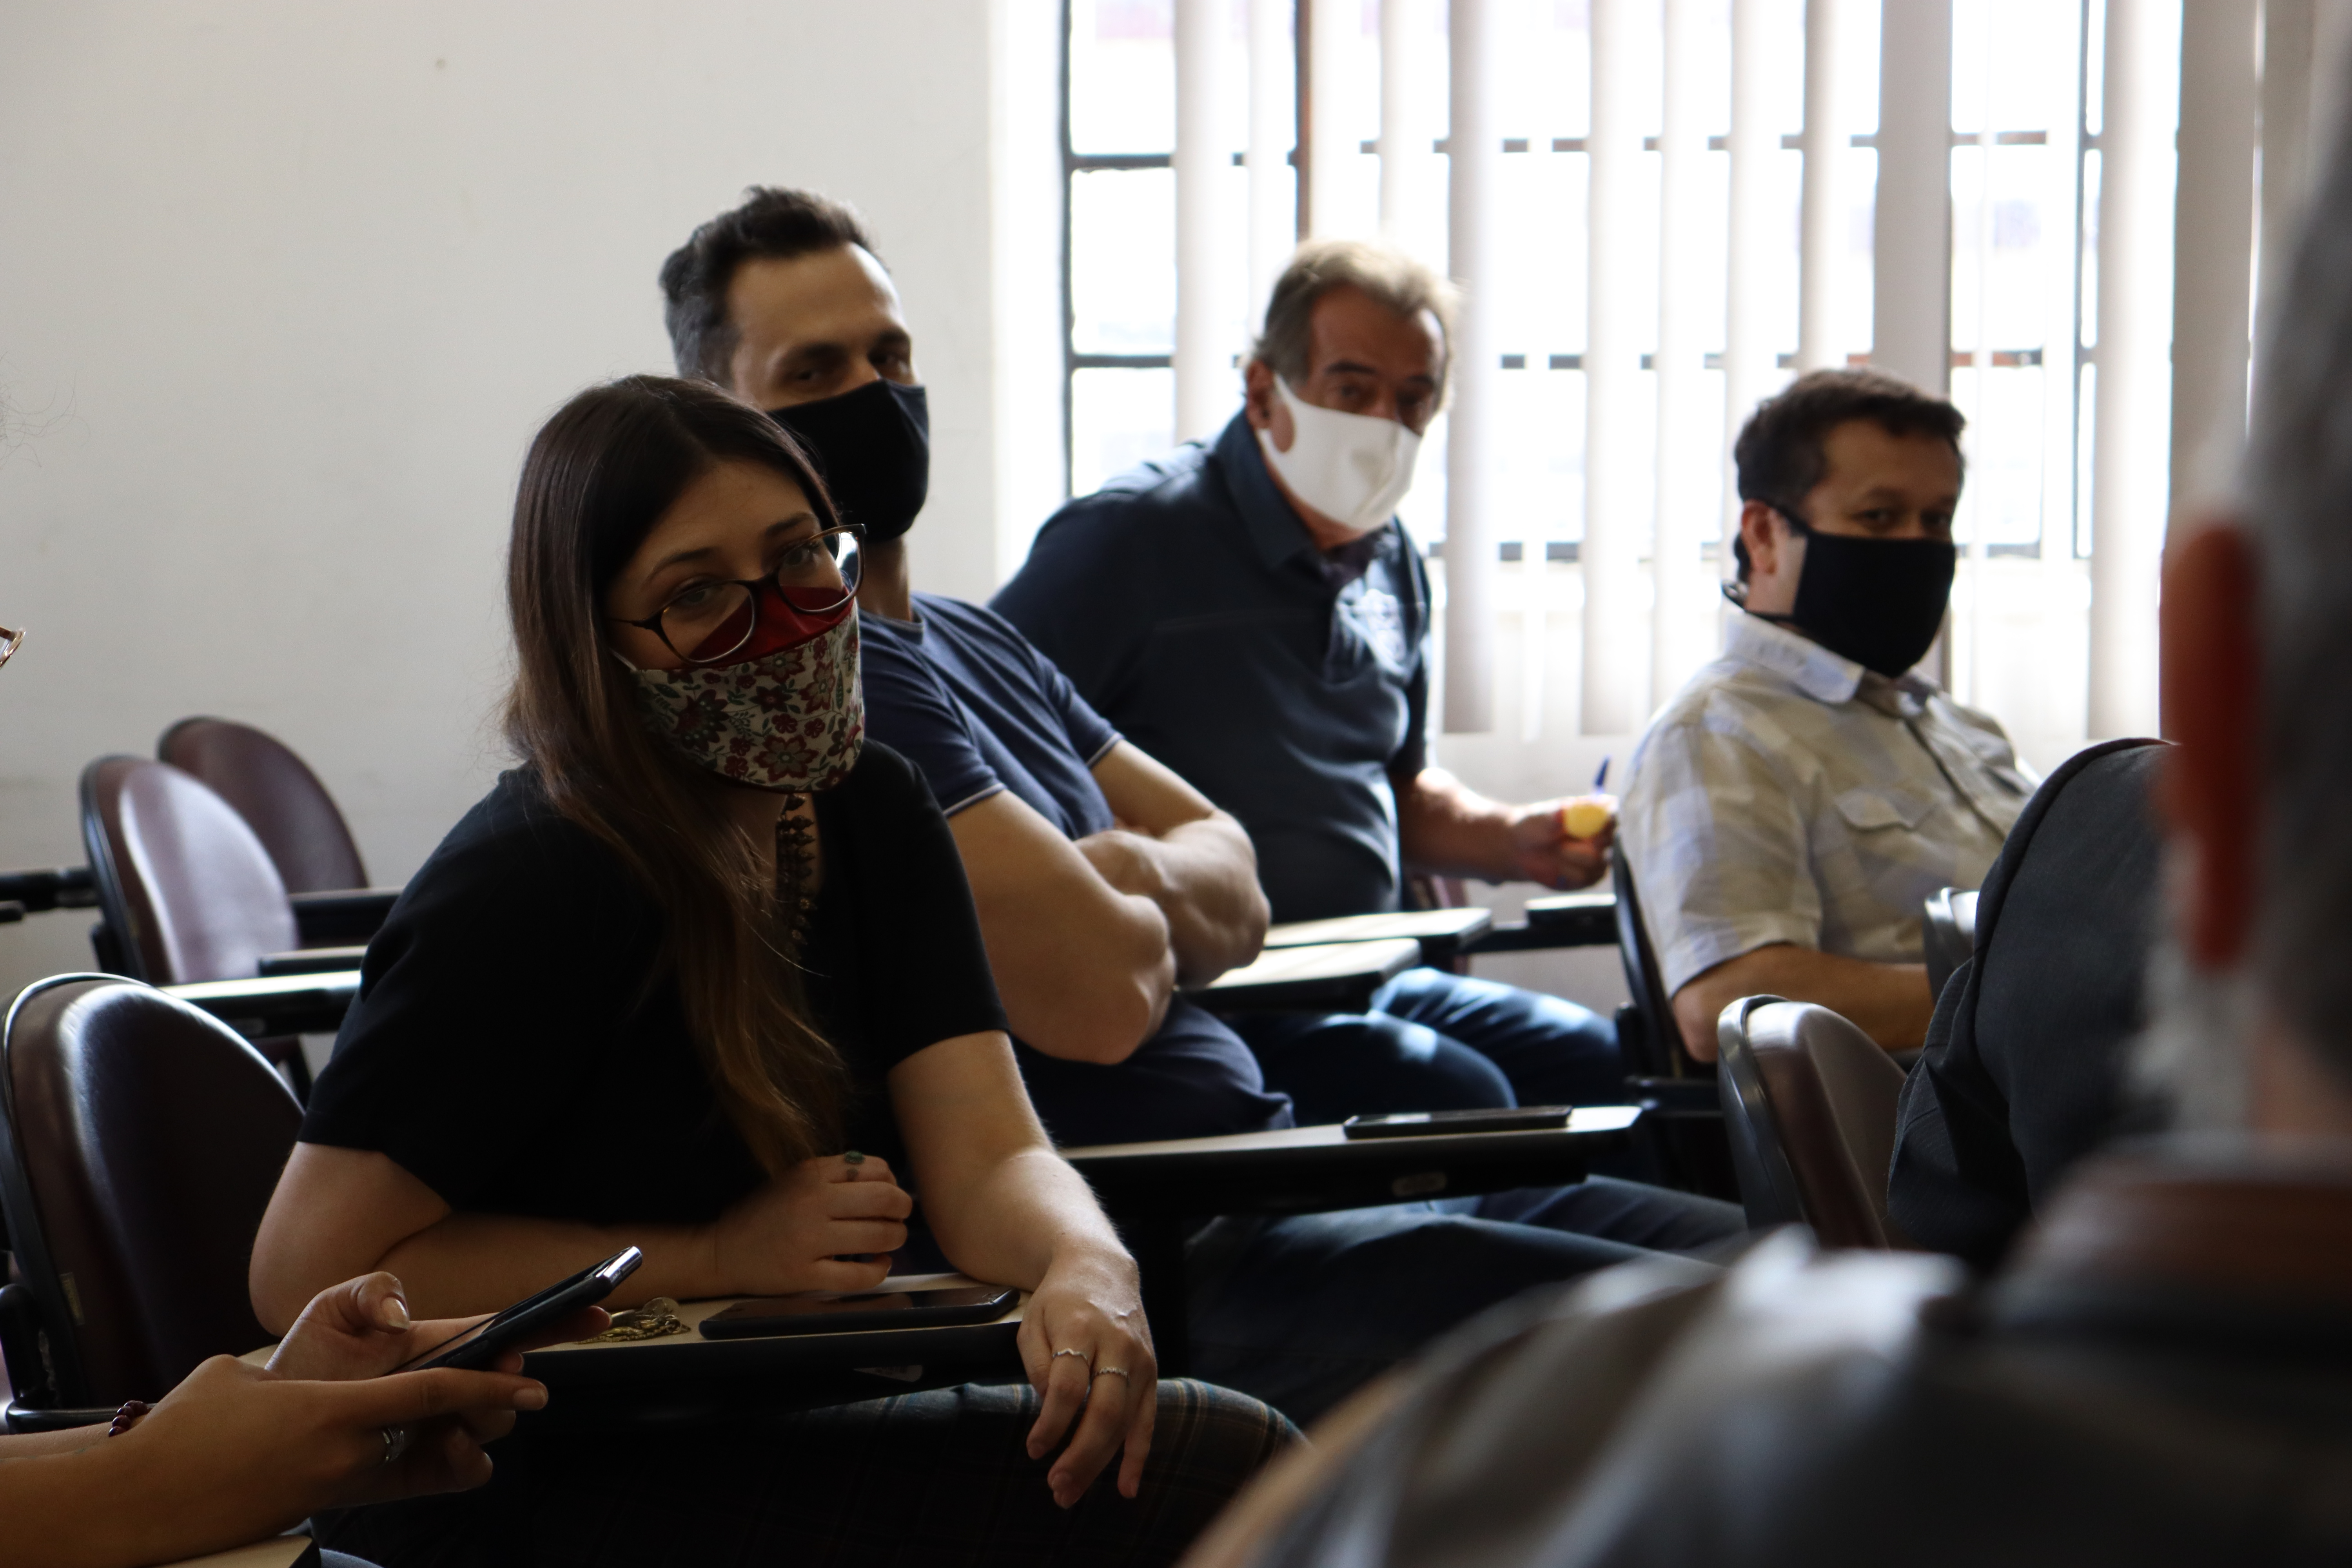 Mulher e homens sentados no auditório com máscaras nos rostos 